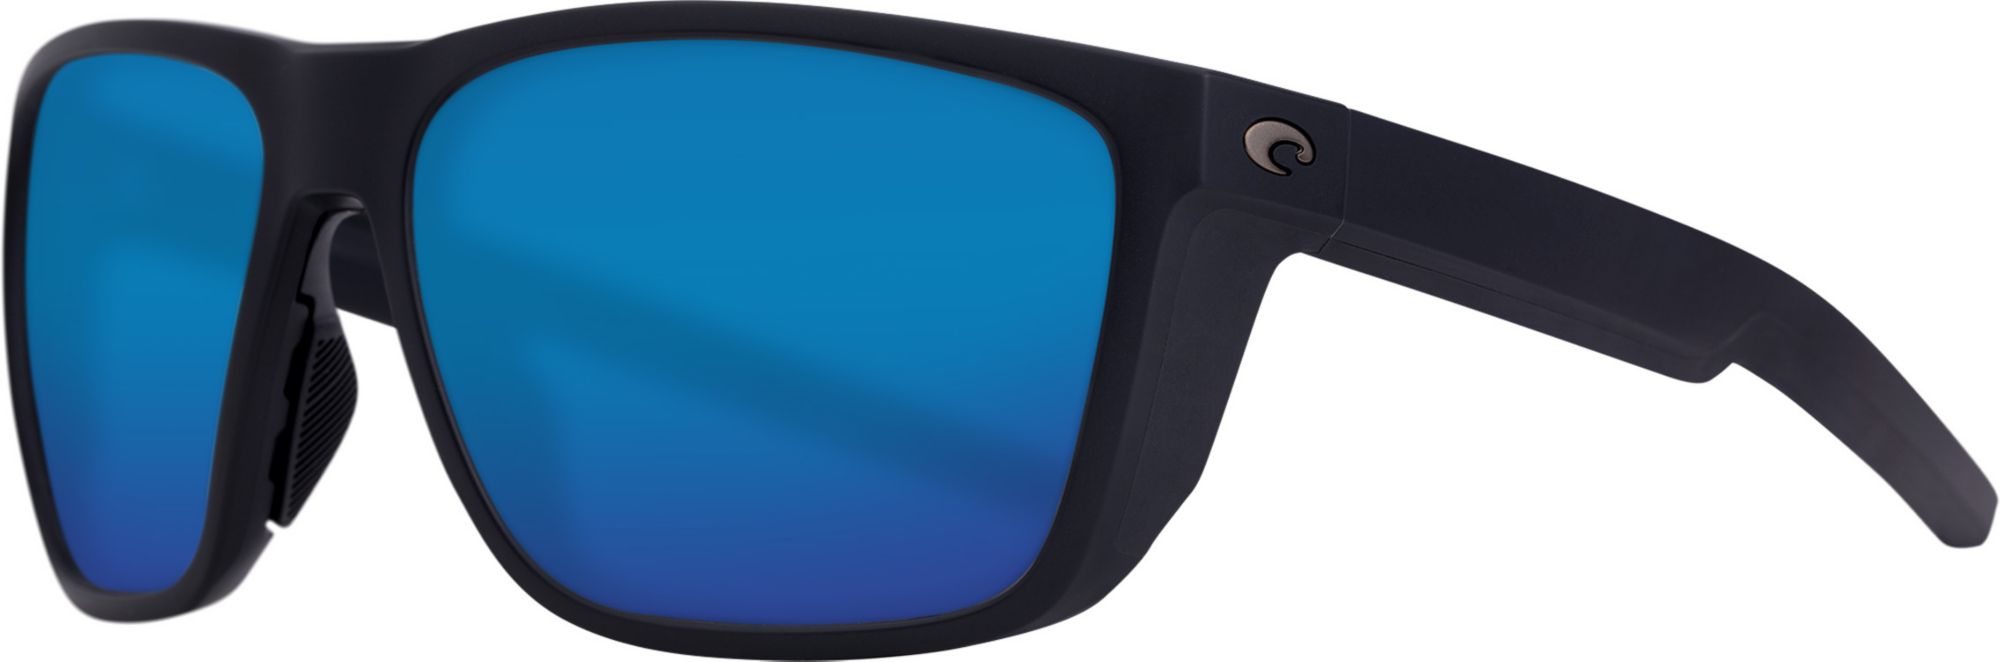 Costa Del Mar Ferg 580P Sunglasses